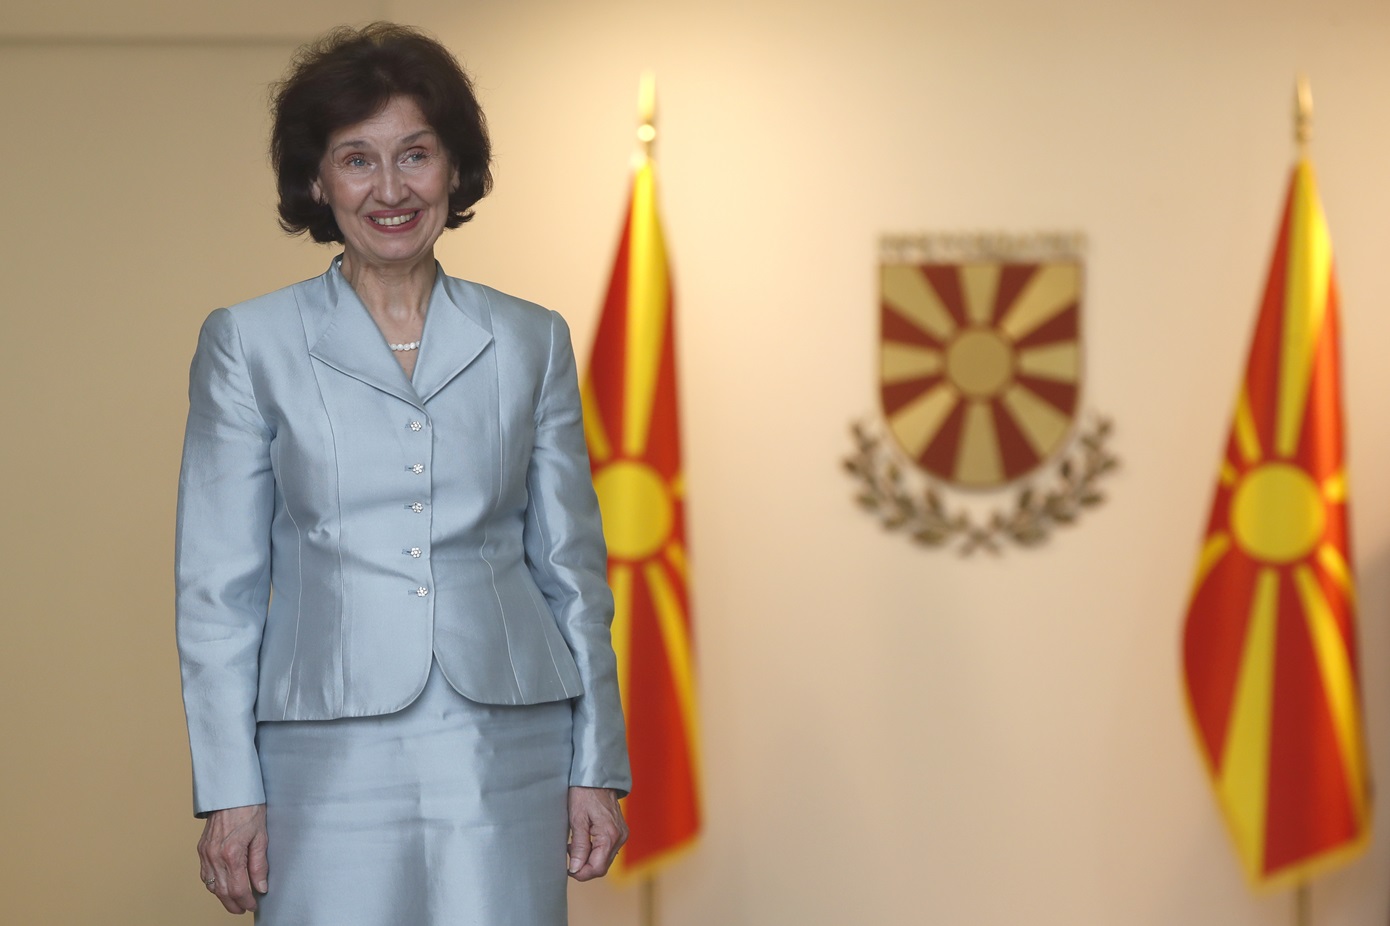 Σιλιάνοφσκα για το όνομα Βόρεια Μακεδονία: «Δεν αποτελεί παραβίαση του Συντάγματος και δεν θα προκαλέσει προβλήματα»